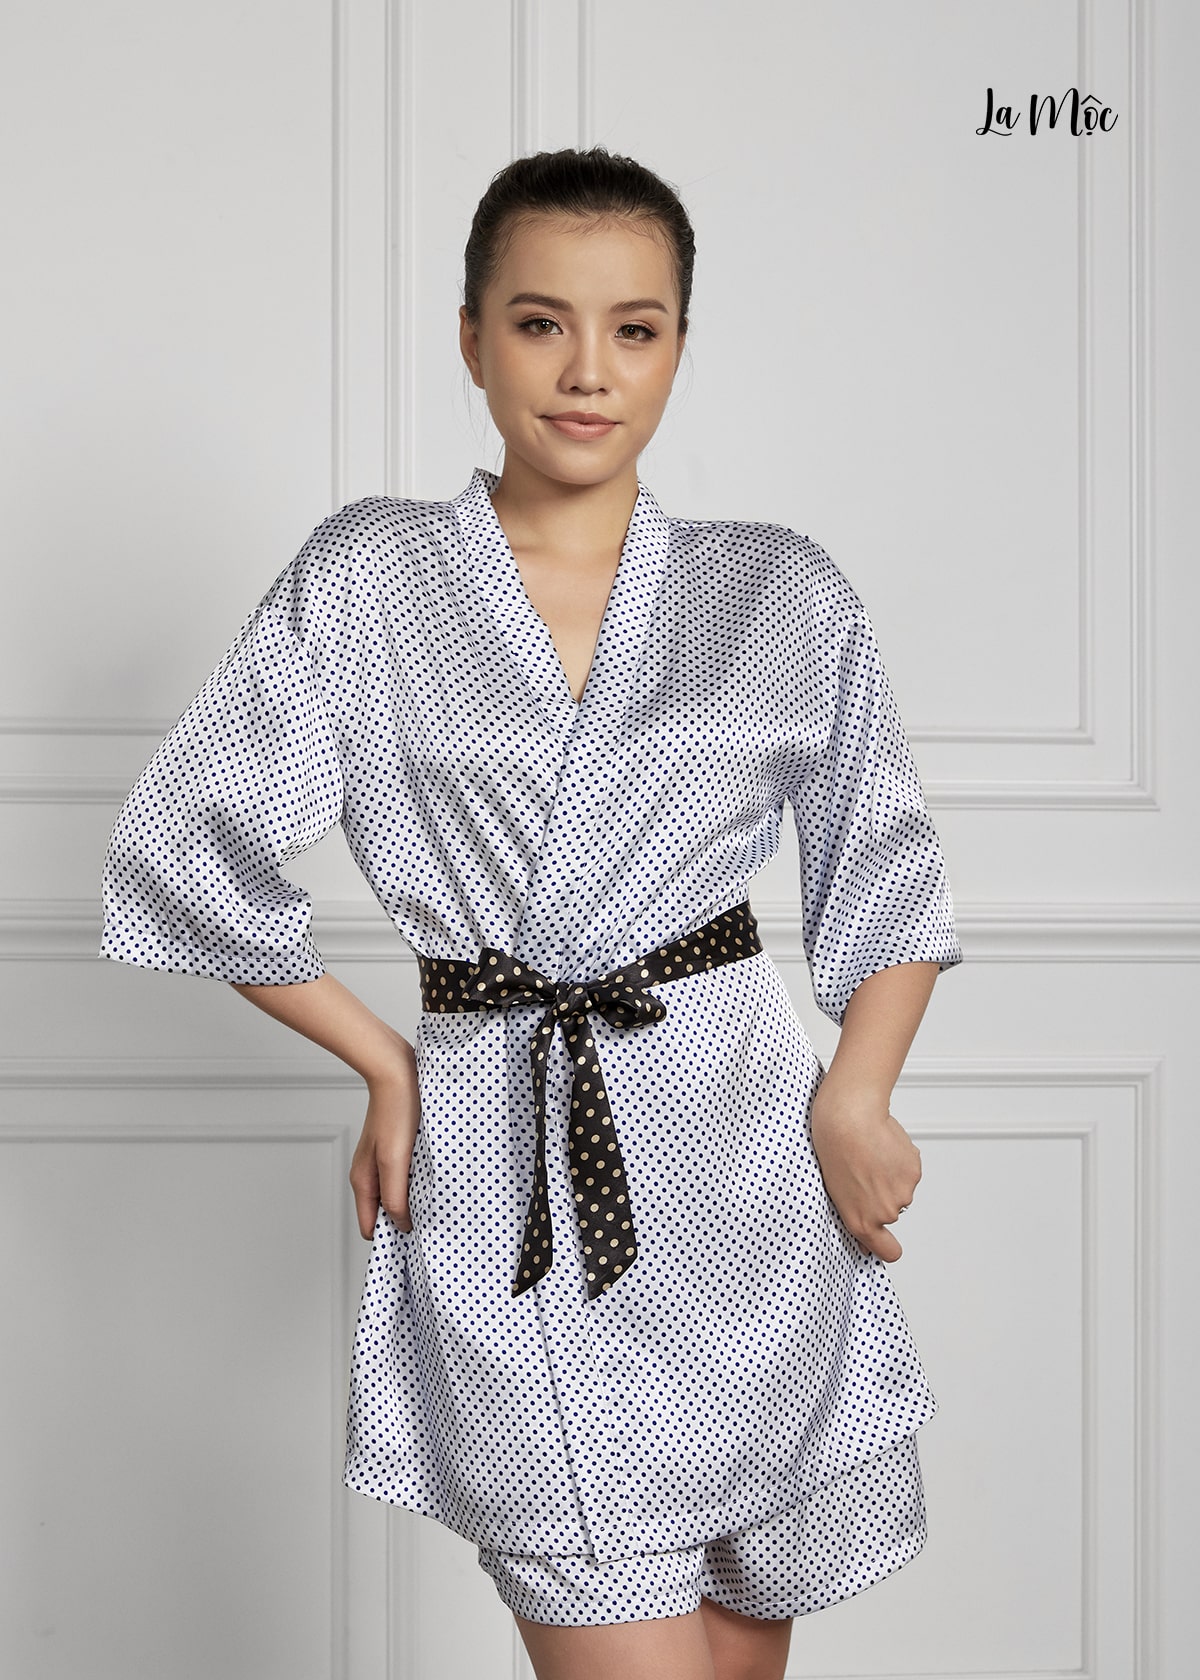 Đồ Bộ Nữ Mặc Nhà Pijama Ngắn Buộc Eo Lụa Hàn Maxivic, La Mộc - MM112119